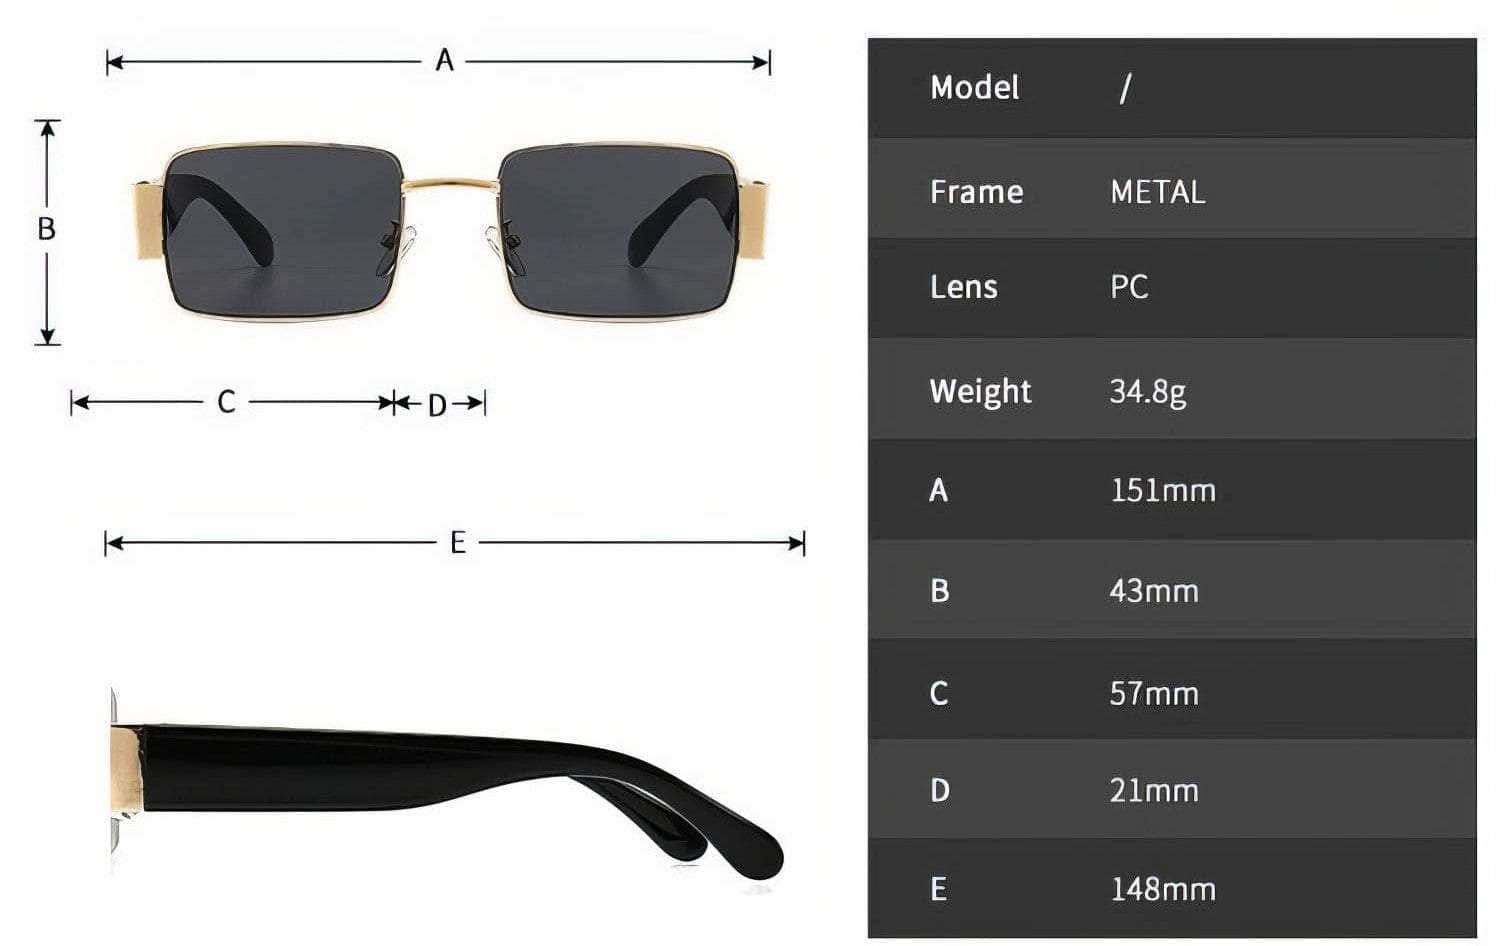 Big Square Transparent Sunglasses